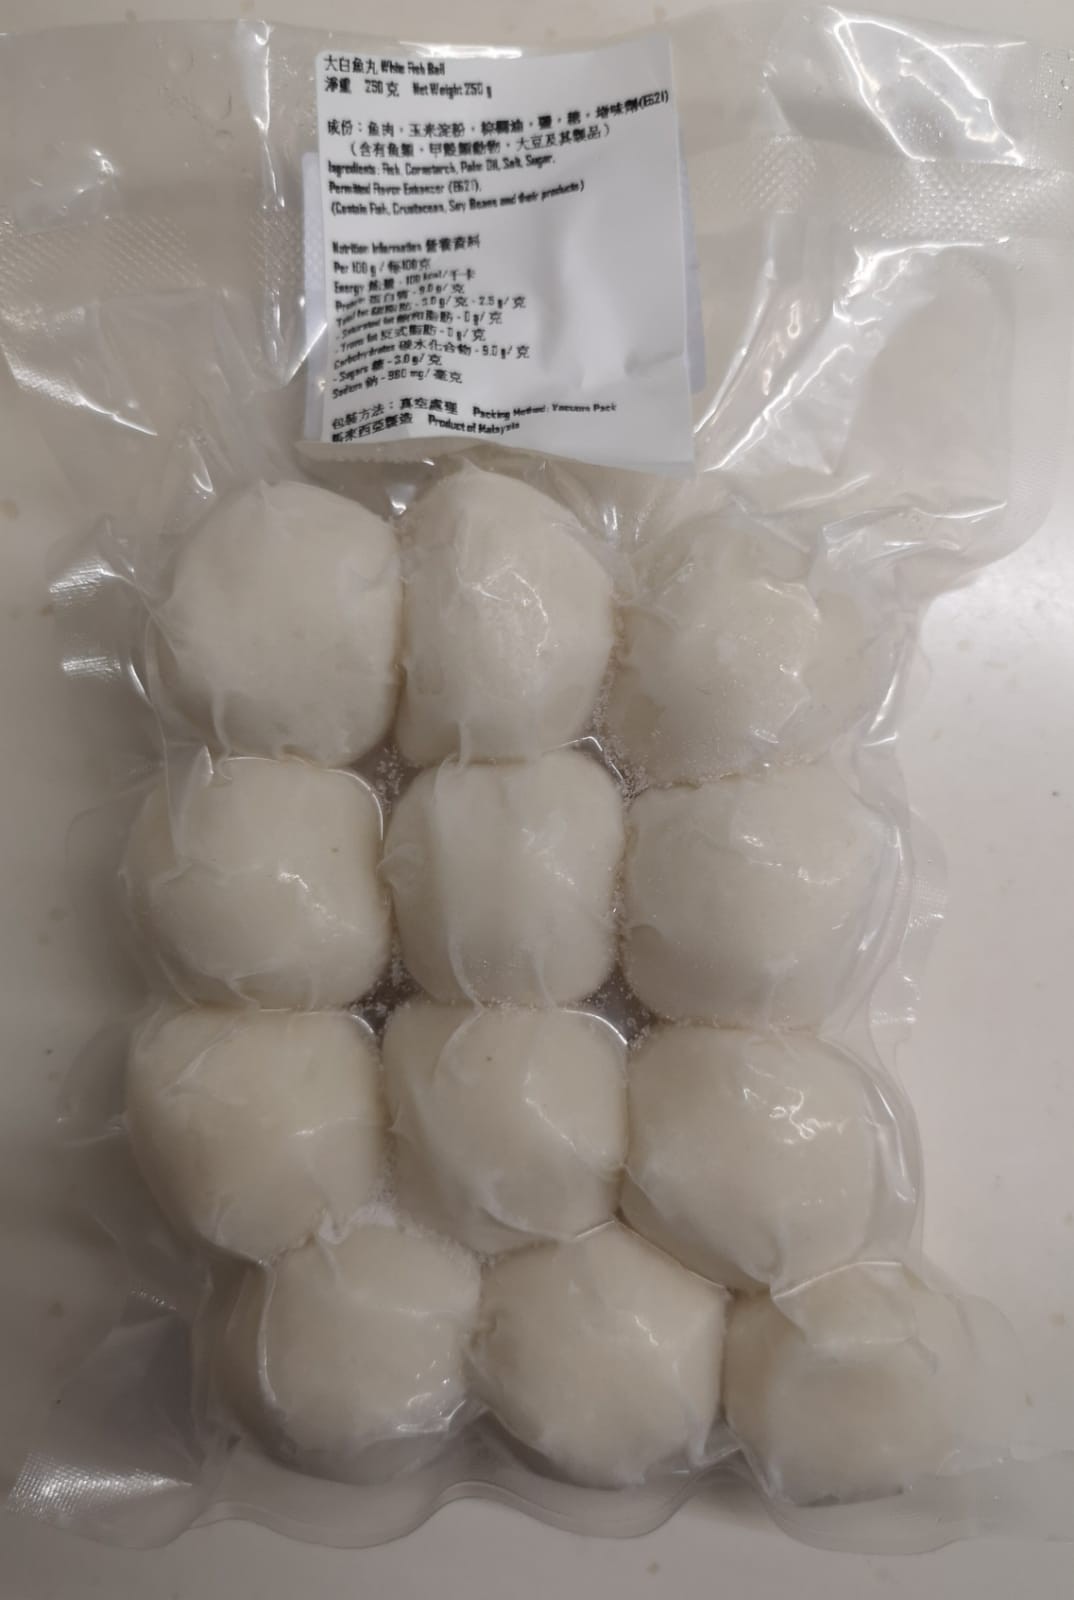 馬來西亞特級白魚蛋12 粒 /包